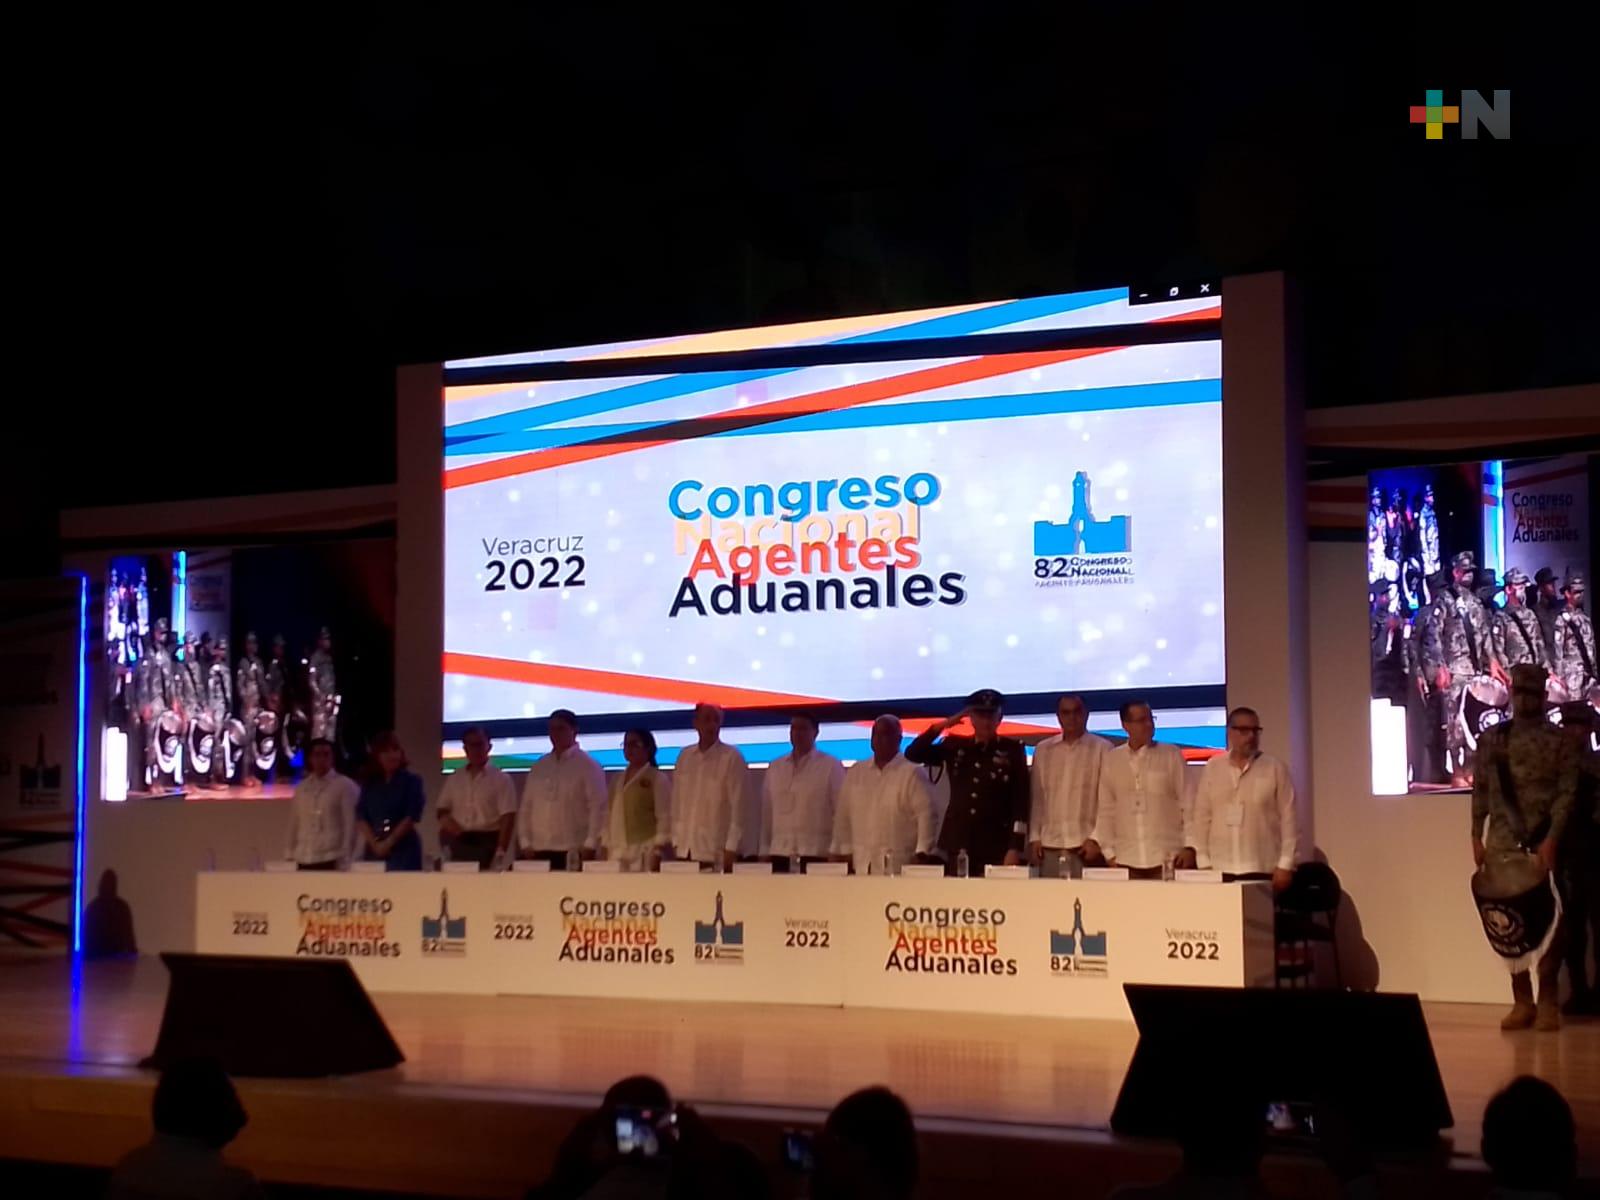 Comenzó Congreso Nacional de Agentes Aduanales 2022